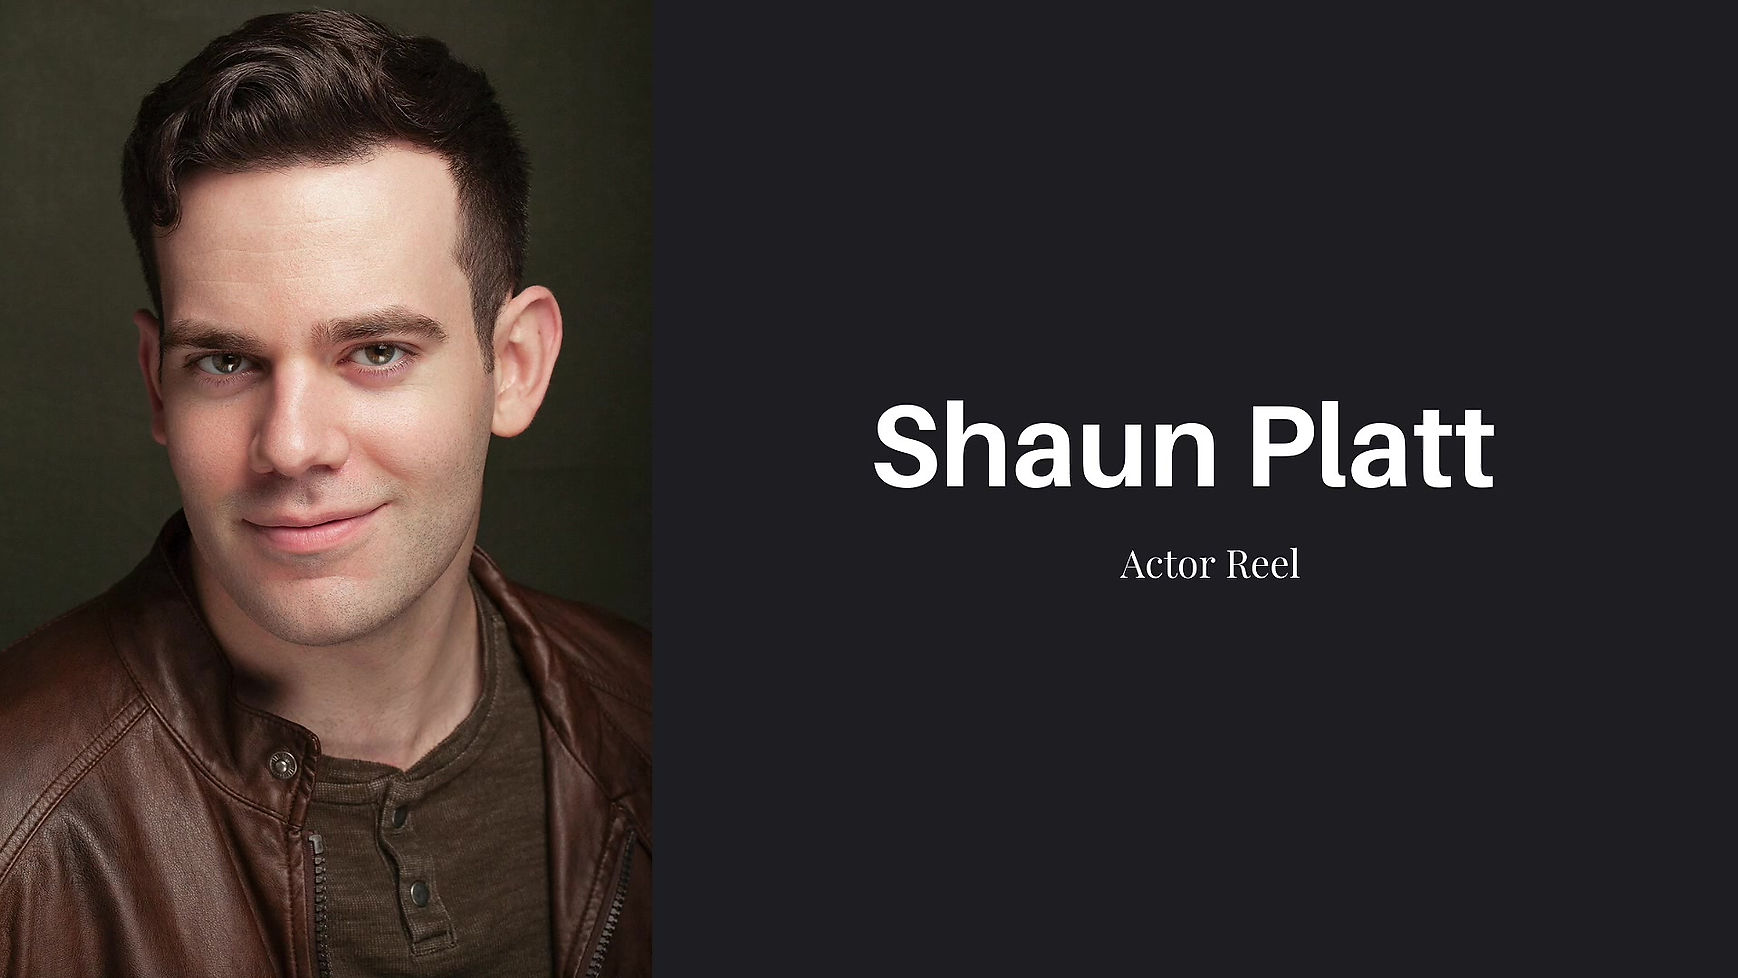 Shaun Platt Actor Reel 2020